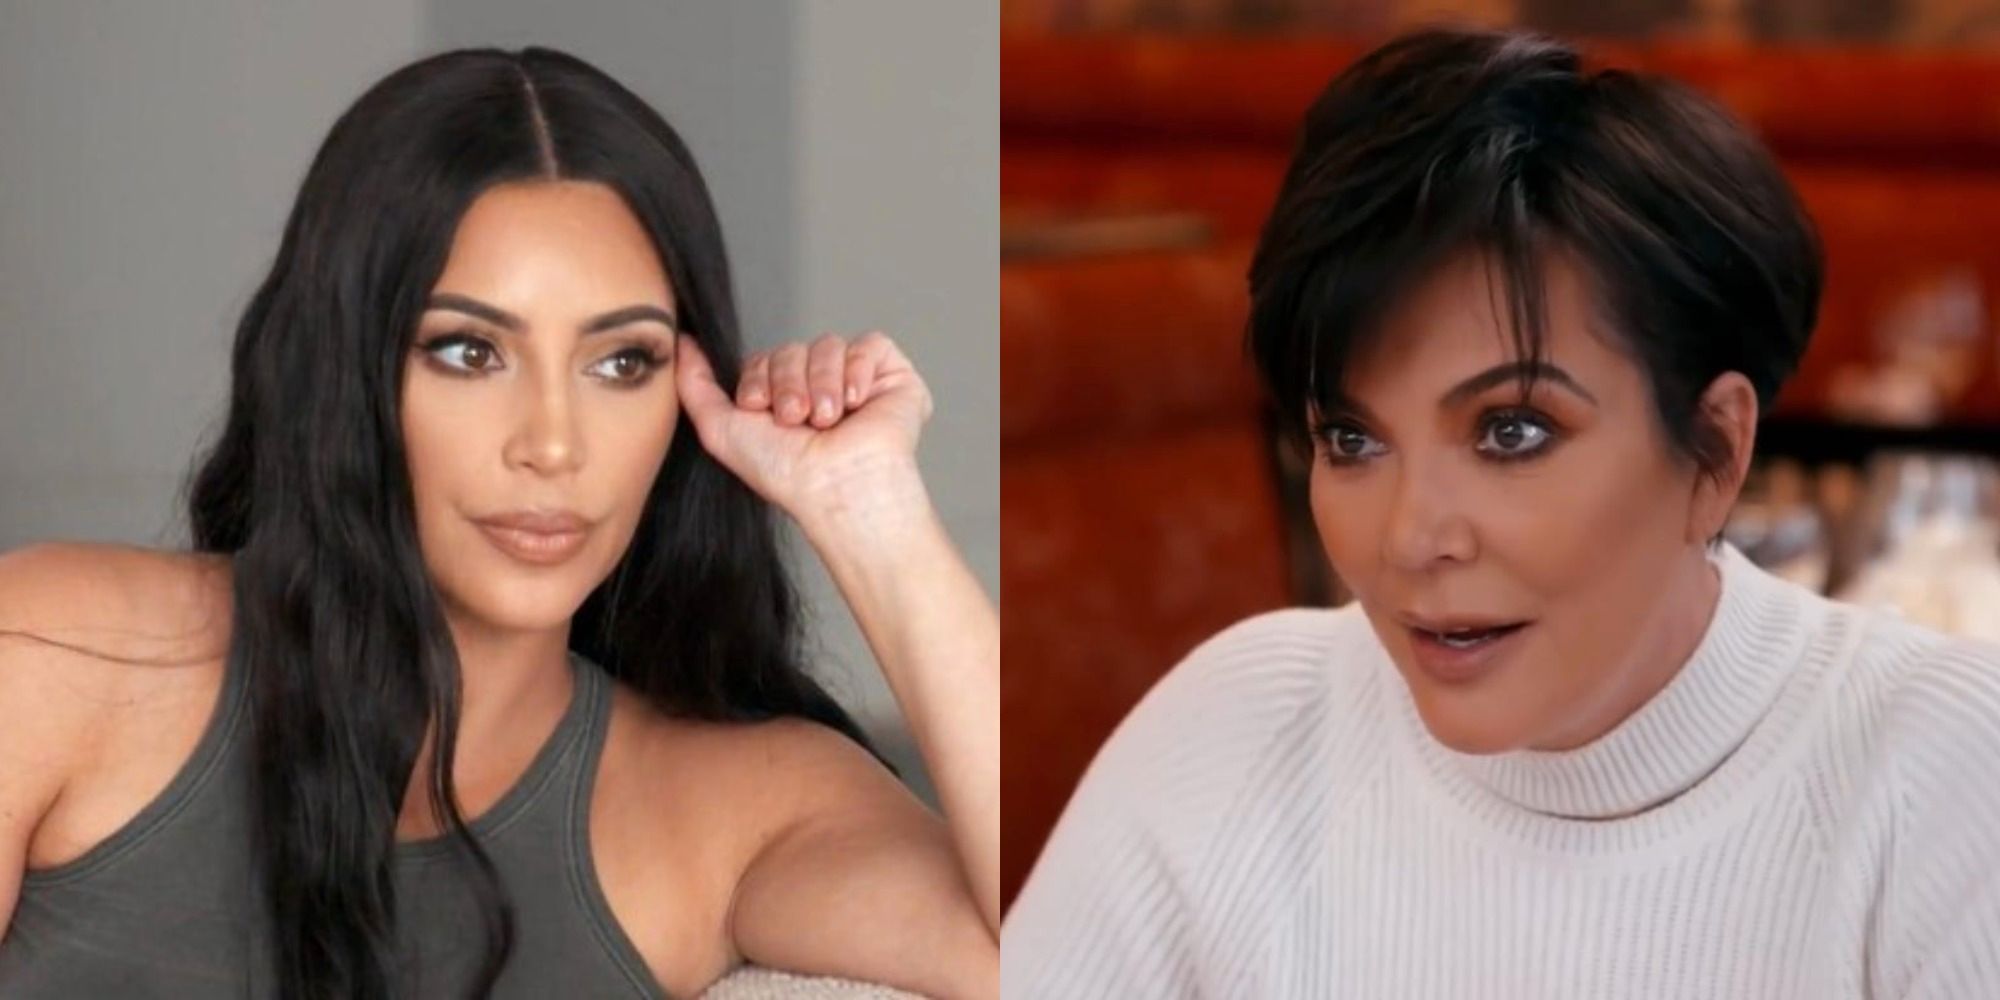 Mantenerse al día con las Kardashians: 10 opiniones impopulares, según Reddit